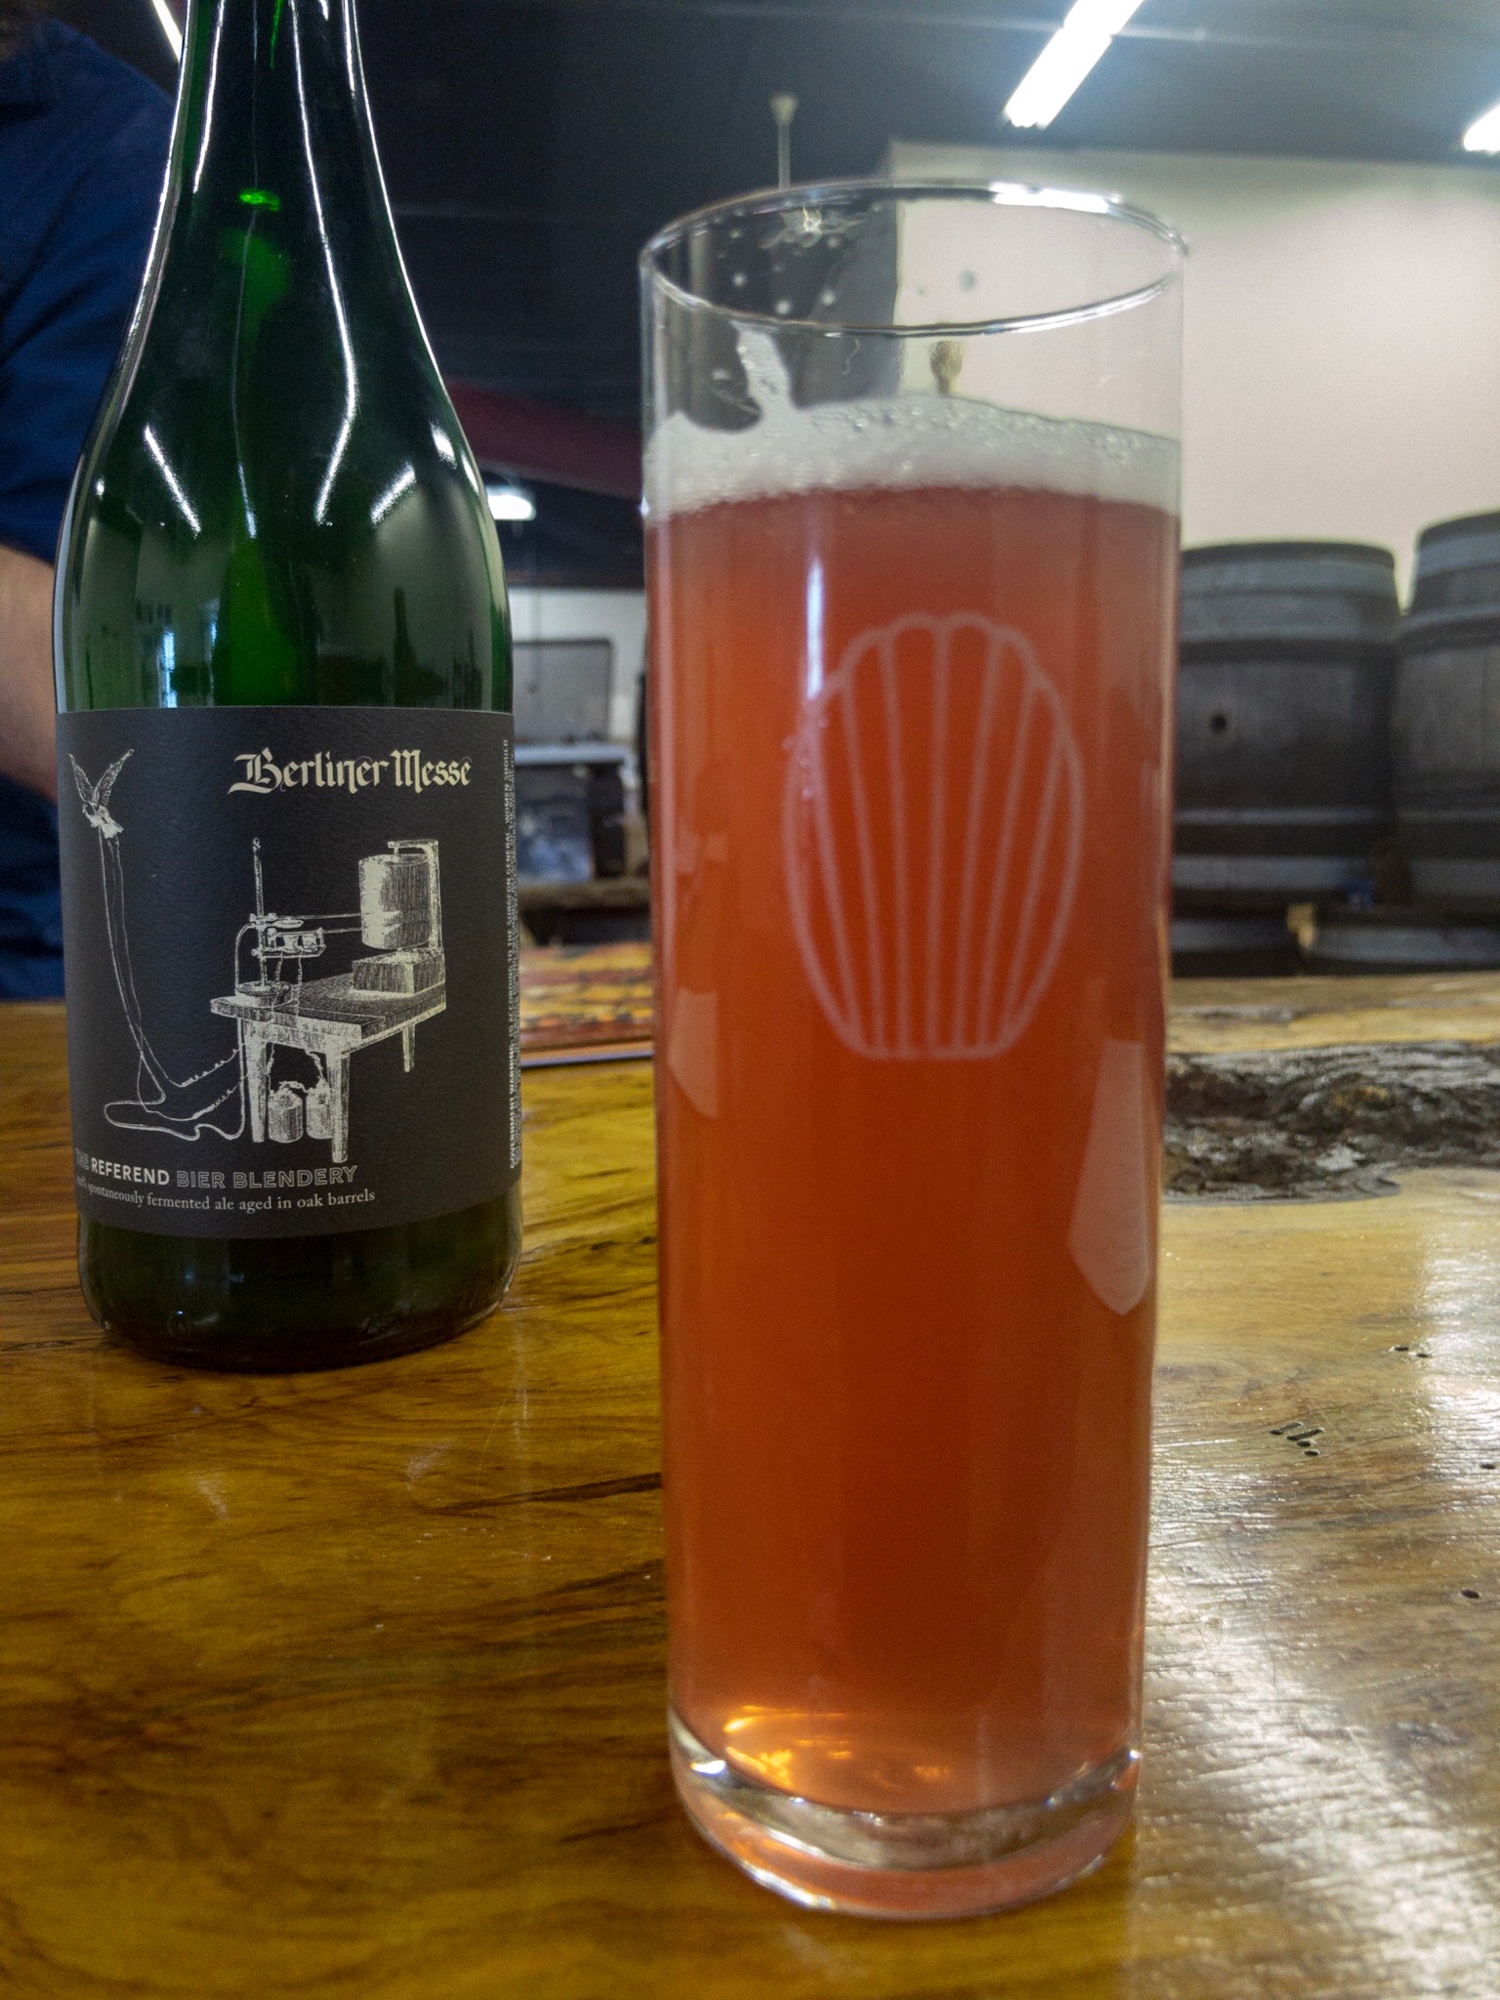 The Referend Bier Blendery's Pink Tristram